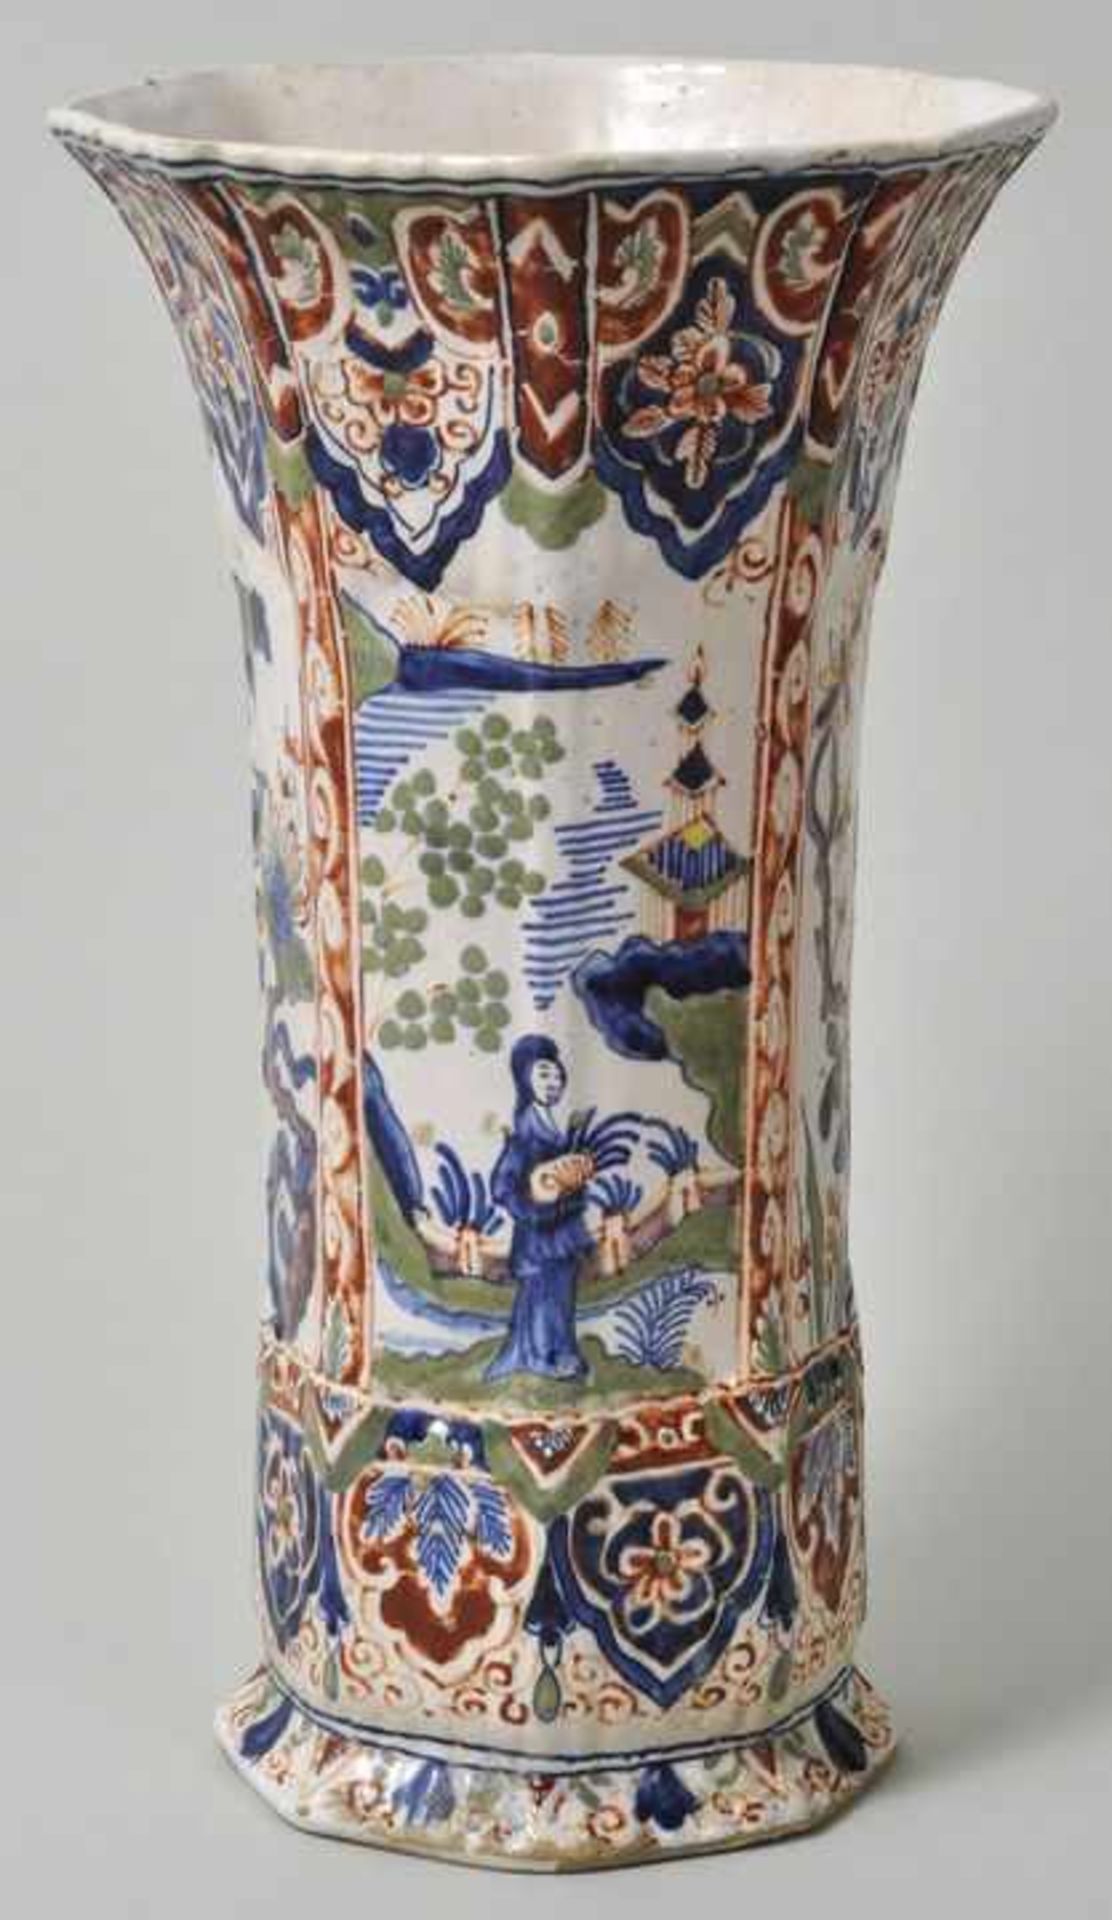 Vase, Delft, um 1700 Fayence, in Eisenrot, Grün, Gelb und Kobaltblau auf cremefarbener Glasur - Bild 2 aus 4